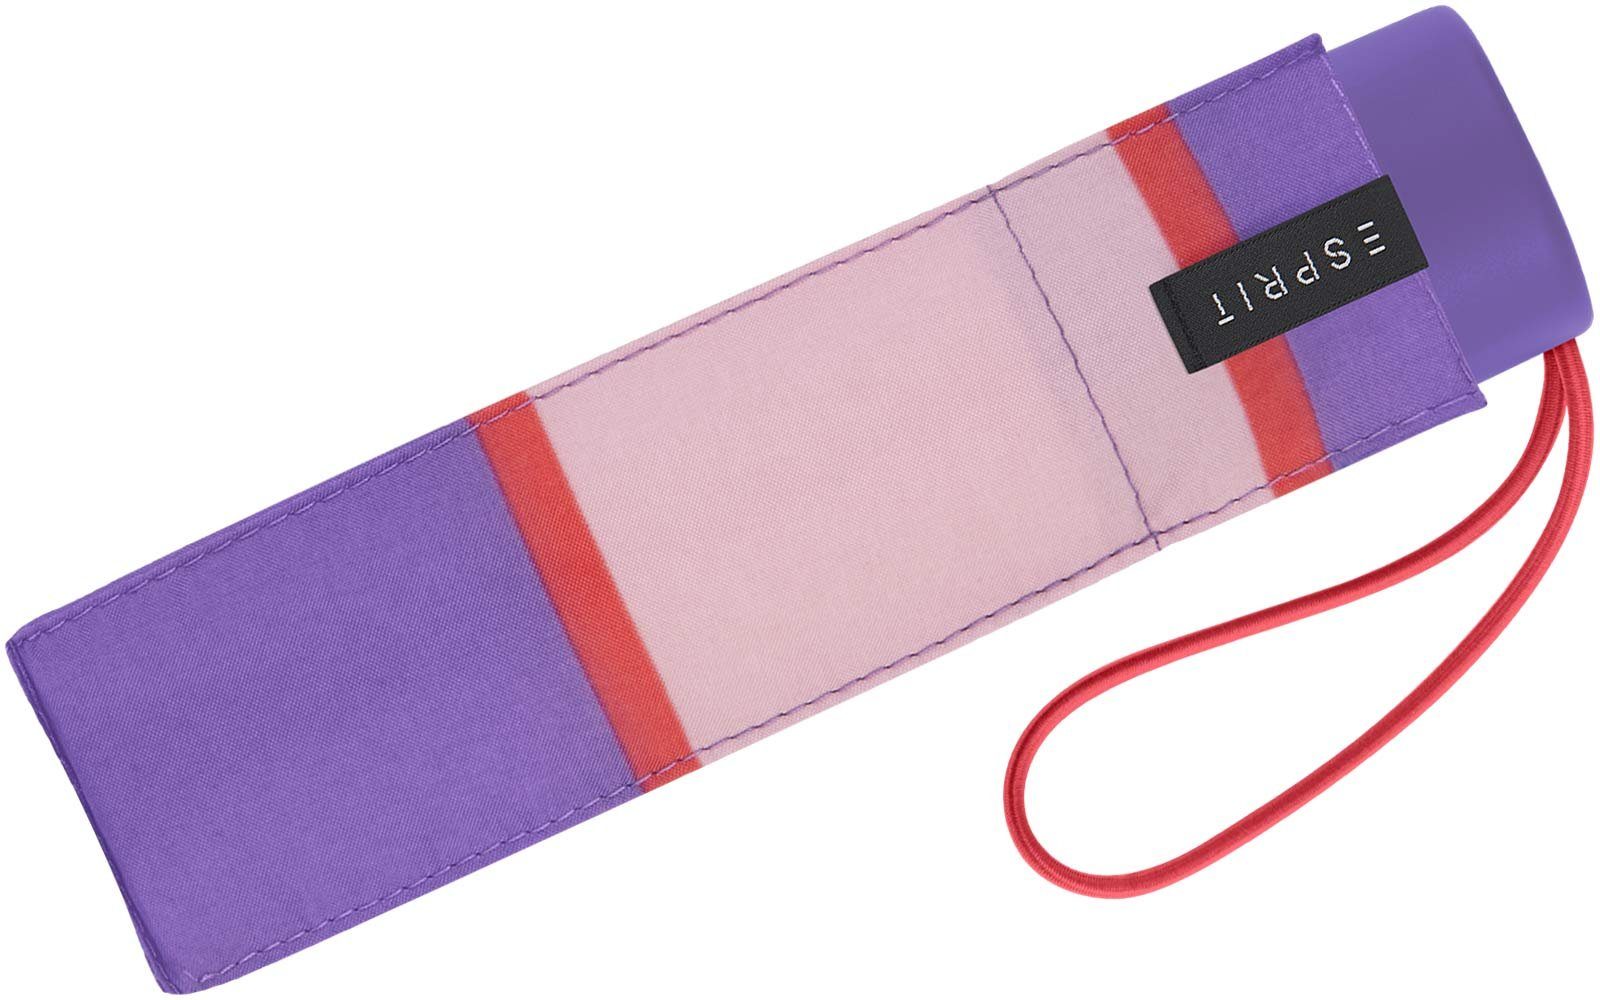 Esprit Collegiate Streifen-Muster Petito Stripe, - mit Taschenregenschirm winzig lavender klein, deep Regenschirm lila-altrosa Mini